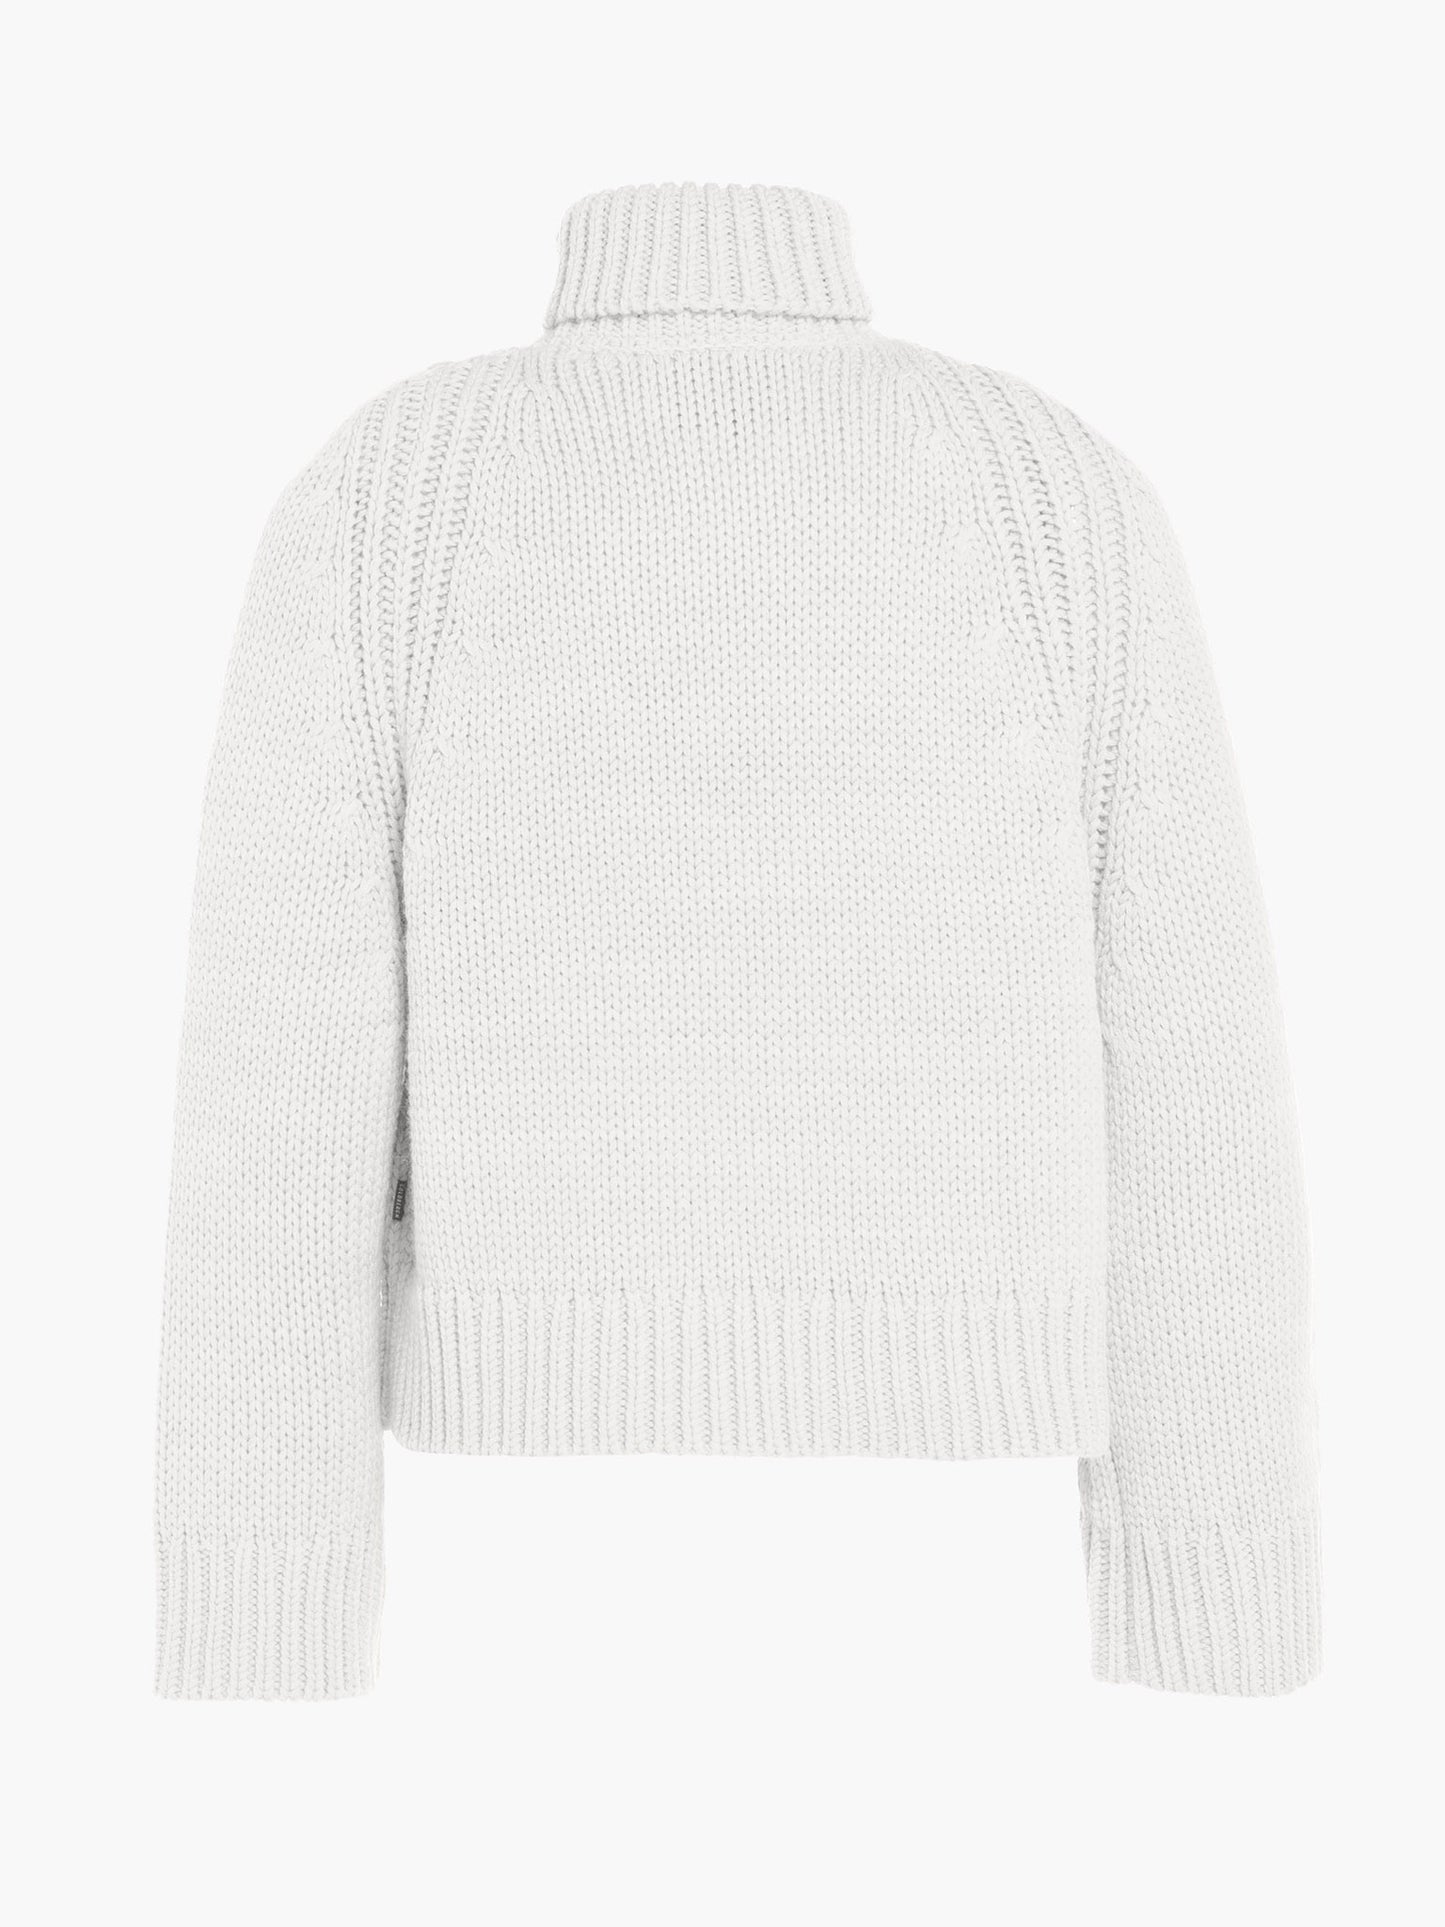 BEAUTY long sleeve knit sweater